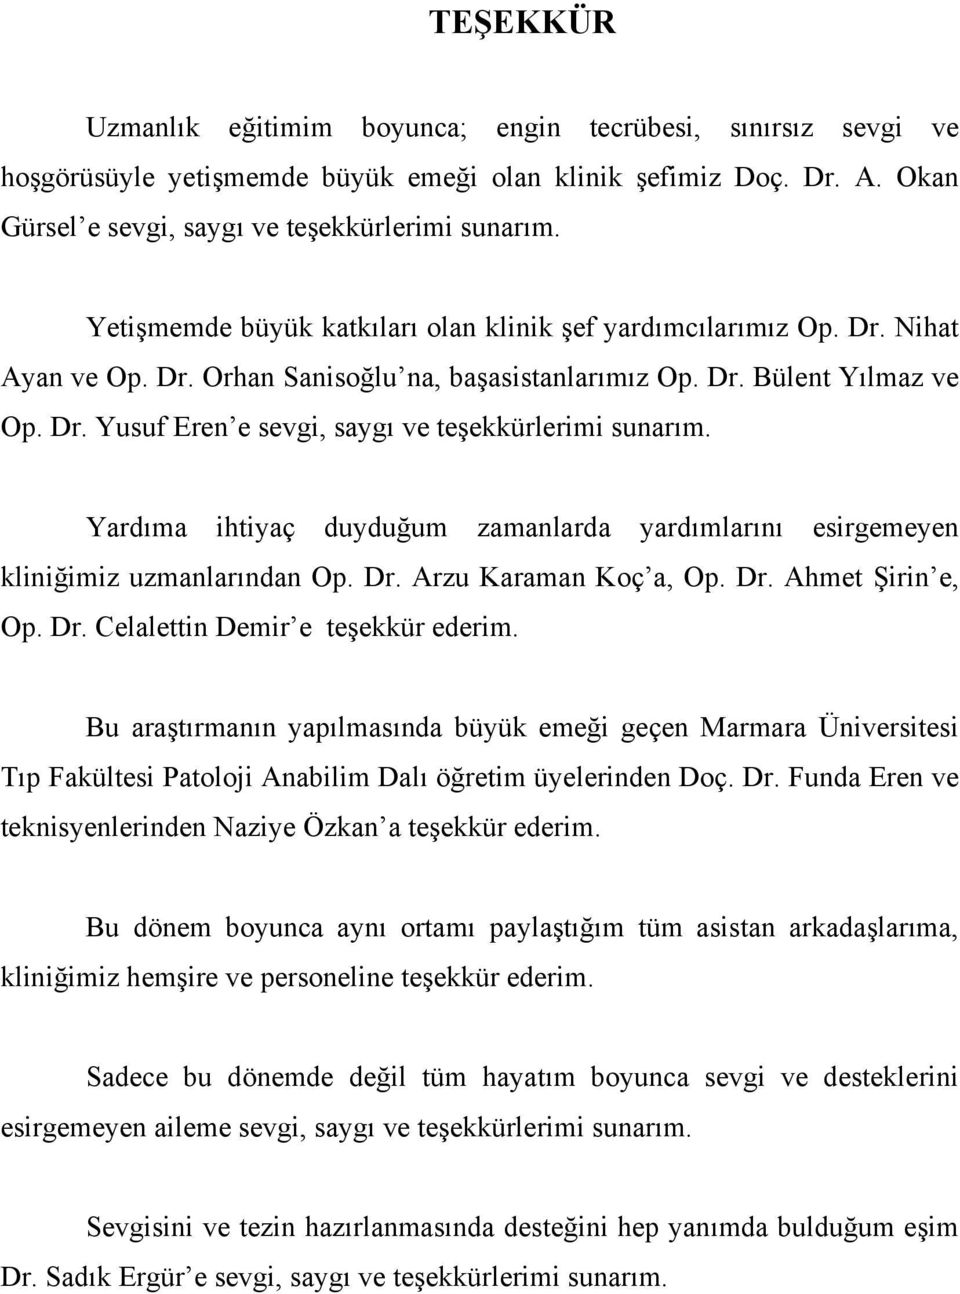 Yardıma ihtiyaç duyduğum zamanlarda yardımlarını esirgemeyen kliniğimiz uzmanlarından Op. Dr. Arzu Karaman Koç a, Op. Dr. Ahmet Şirin e, Op. Dr. Celalettin Demir e teşekkür ederim.